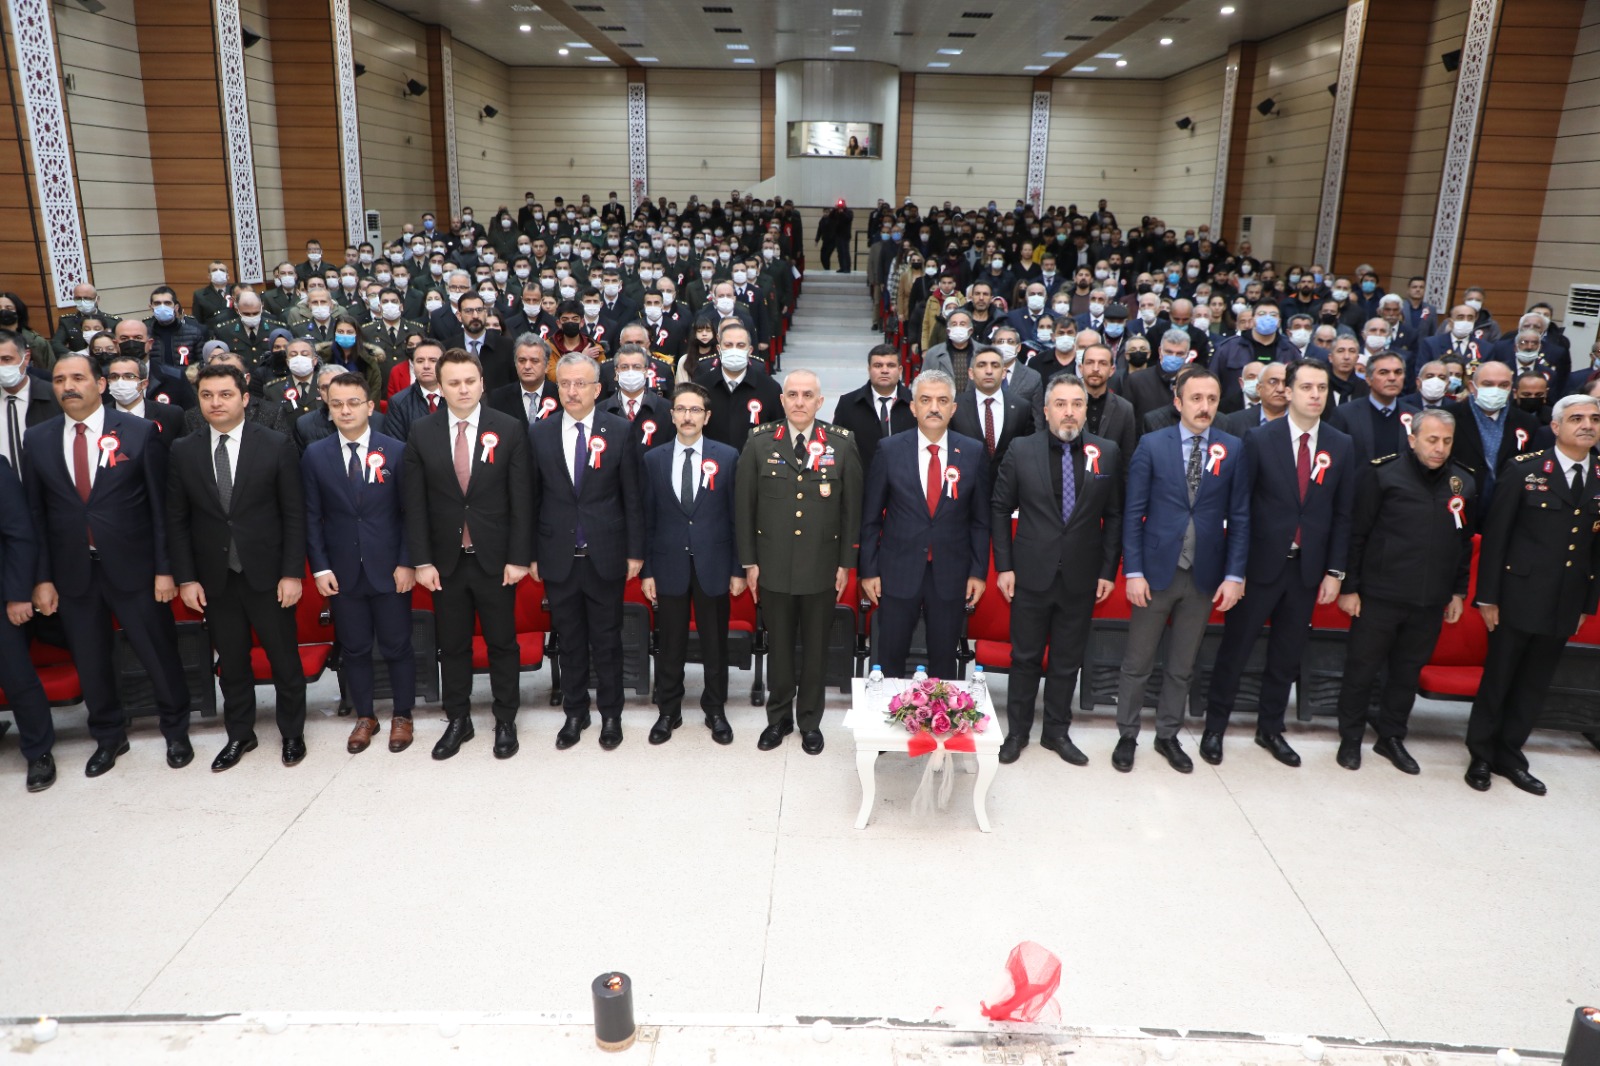 Erzincan Milli Egemenlik Anadolu Lisesi Öğrencileri Tarafından “18 Mart Şehitleri Anma Günü” Münasebetiyle Program Düzenlendi